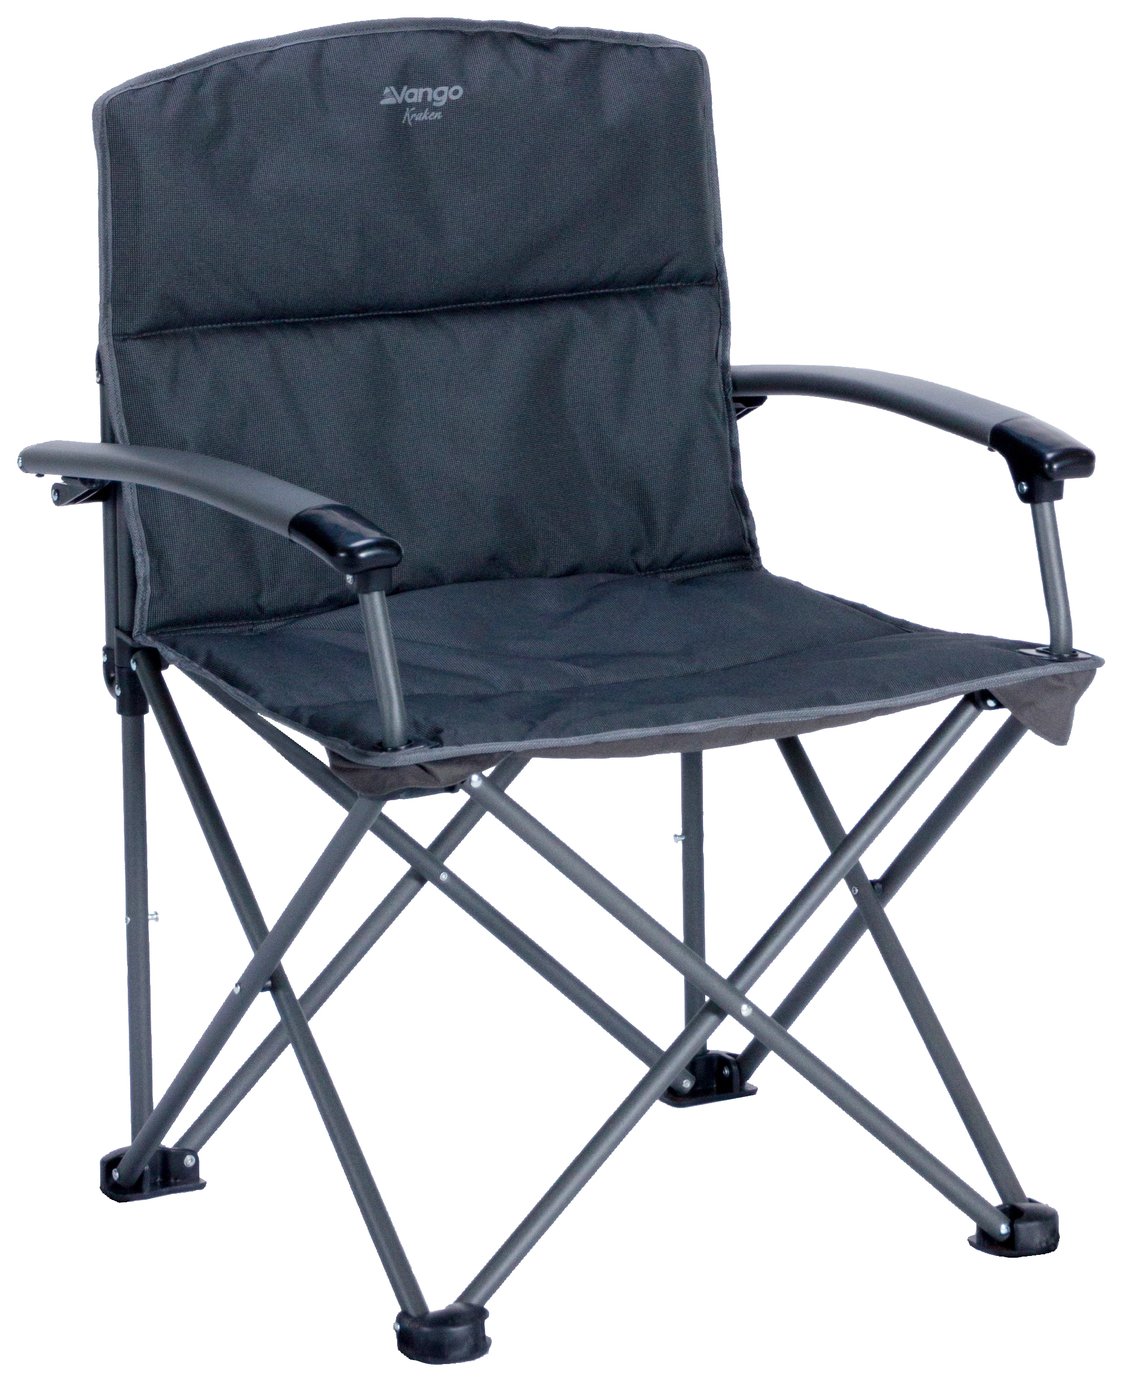 Vango Kraken Camping Chair